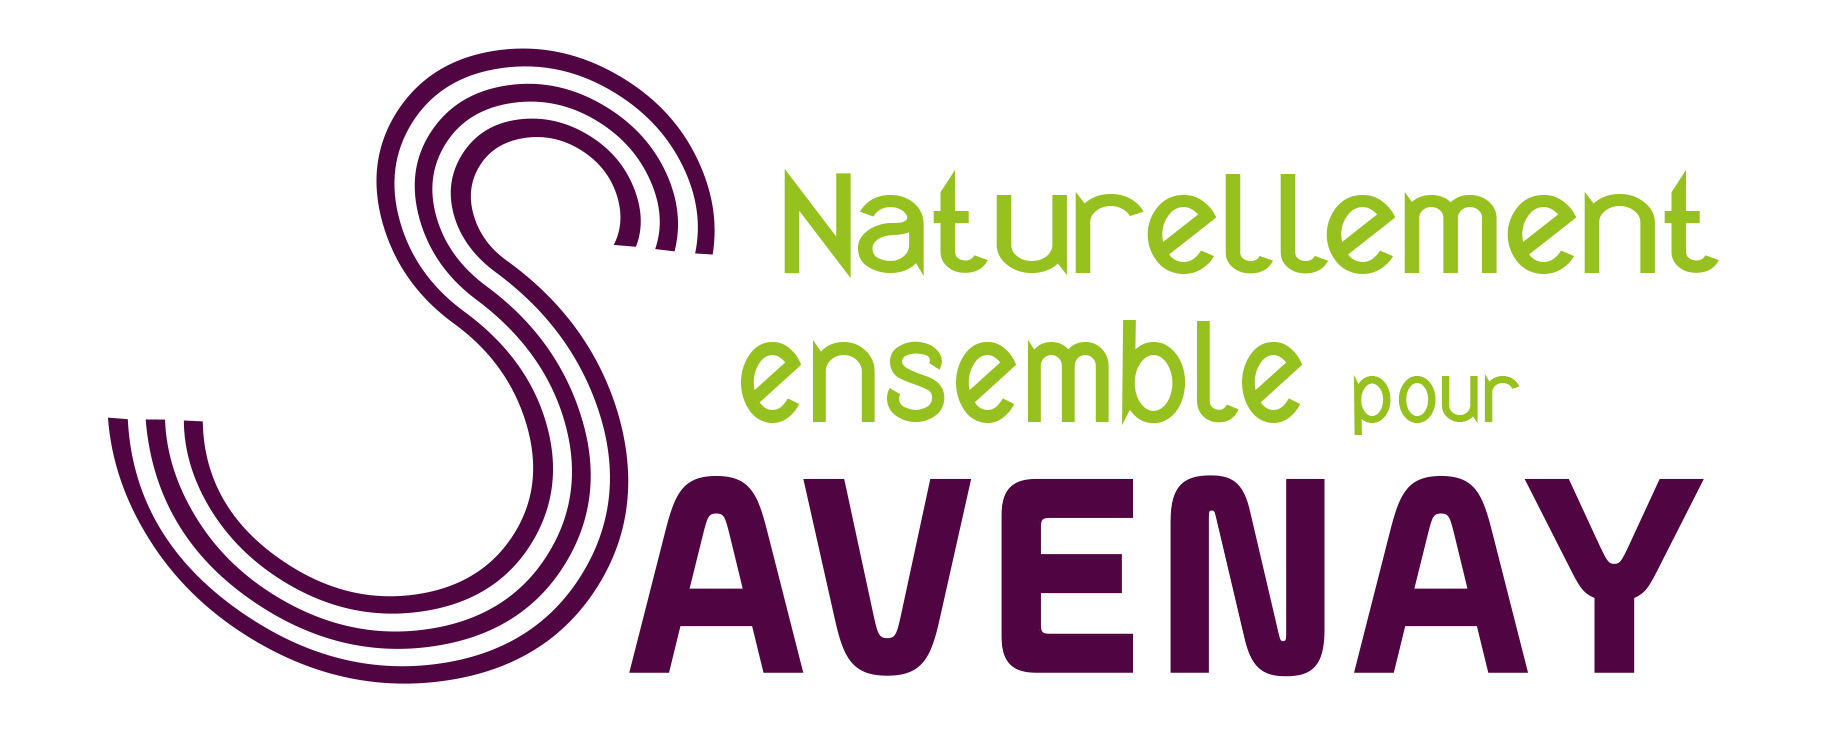 Logo Naturellement ensemble pour savenay, liste aux élections municipales 2020 pour la ville de Savenay